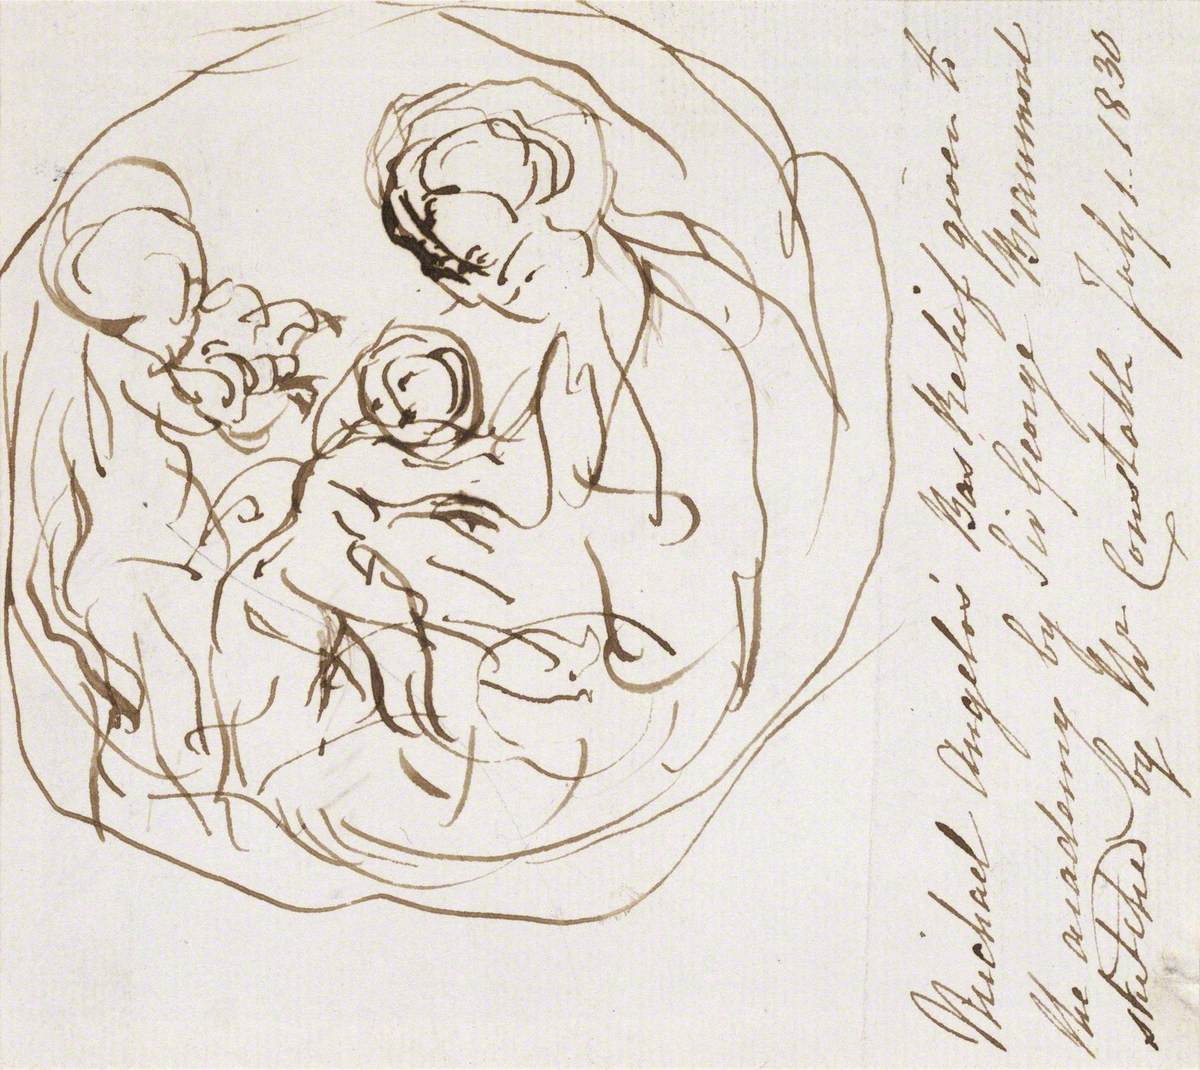 Sketch of Michelangelo's Taddei Tondo